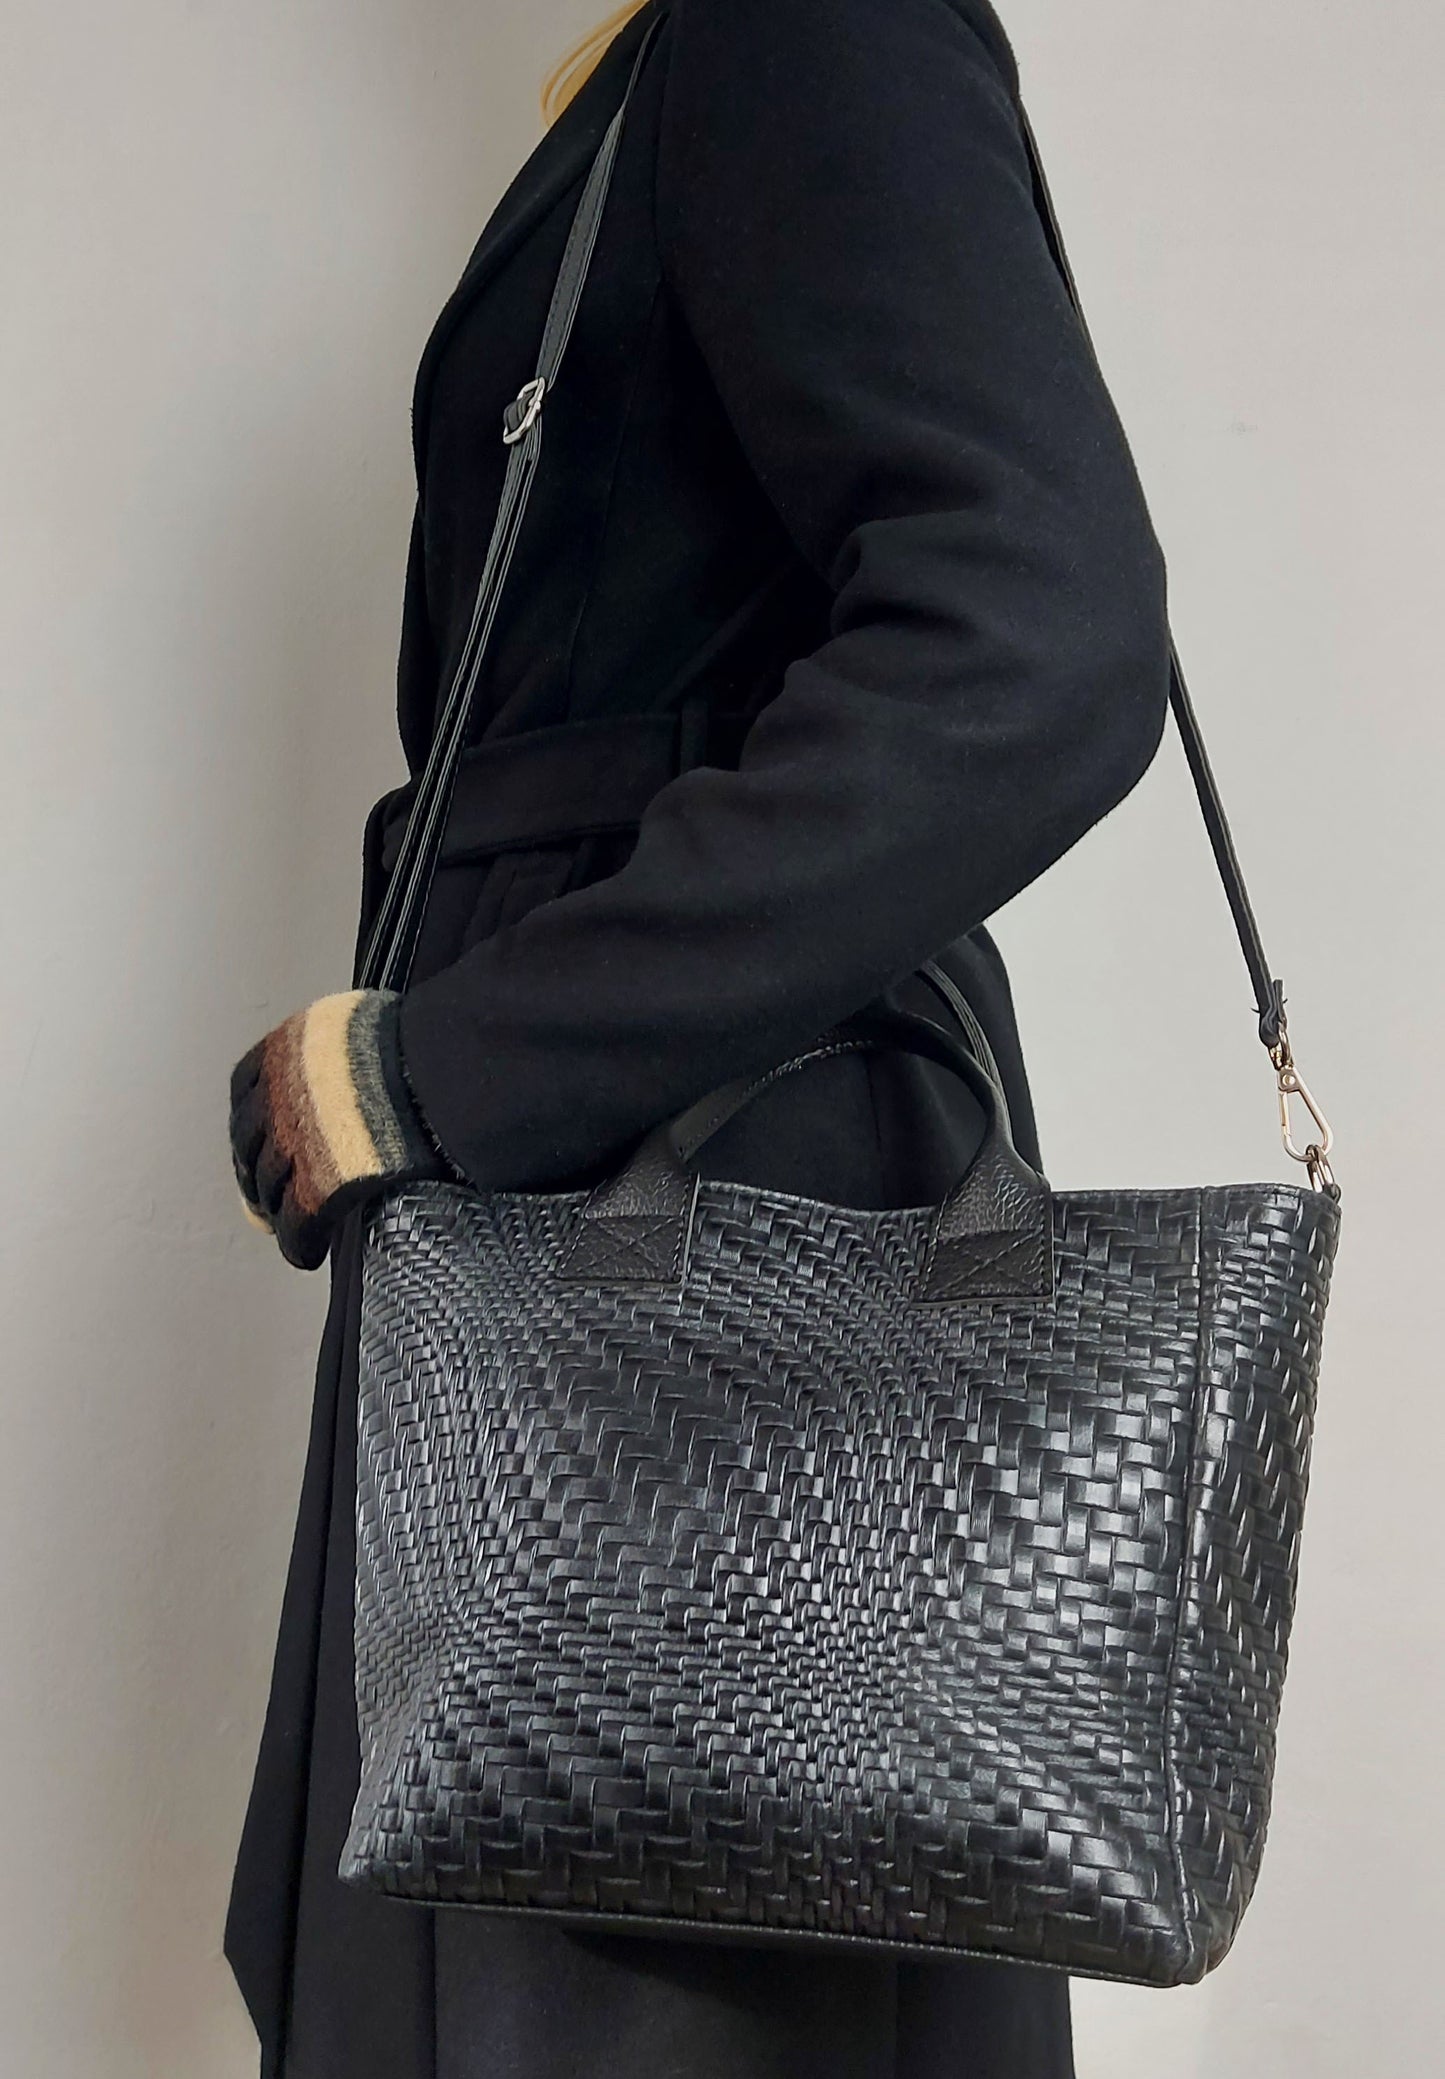 Black Leather Structured Handbag Shoulder Tote Grab Bag